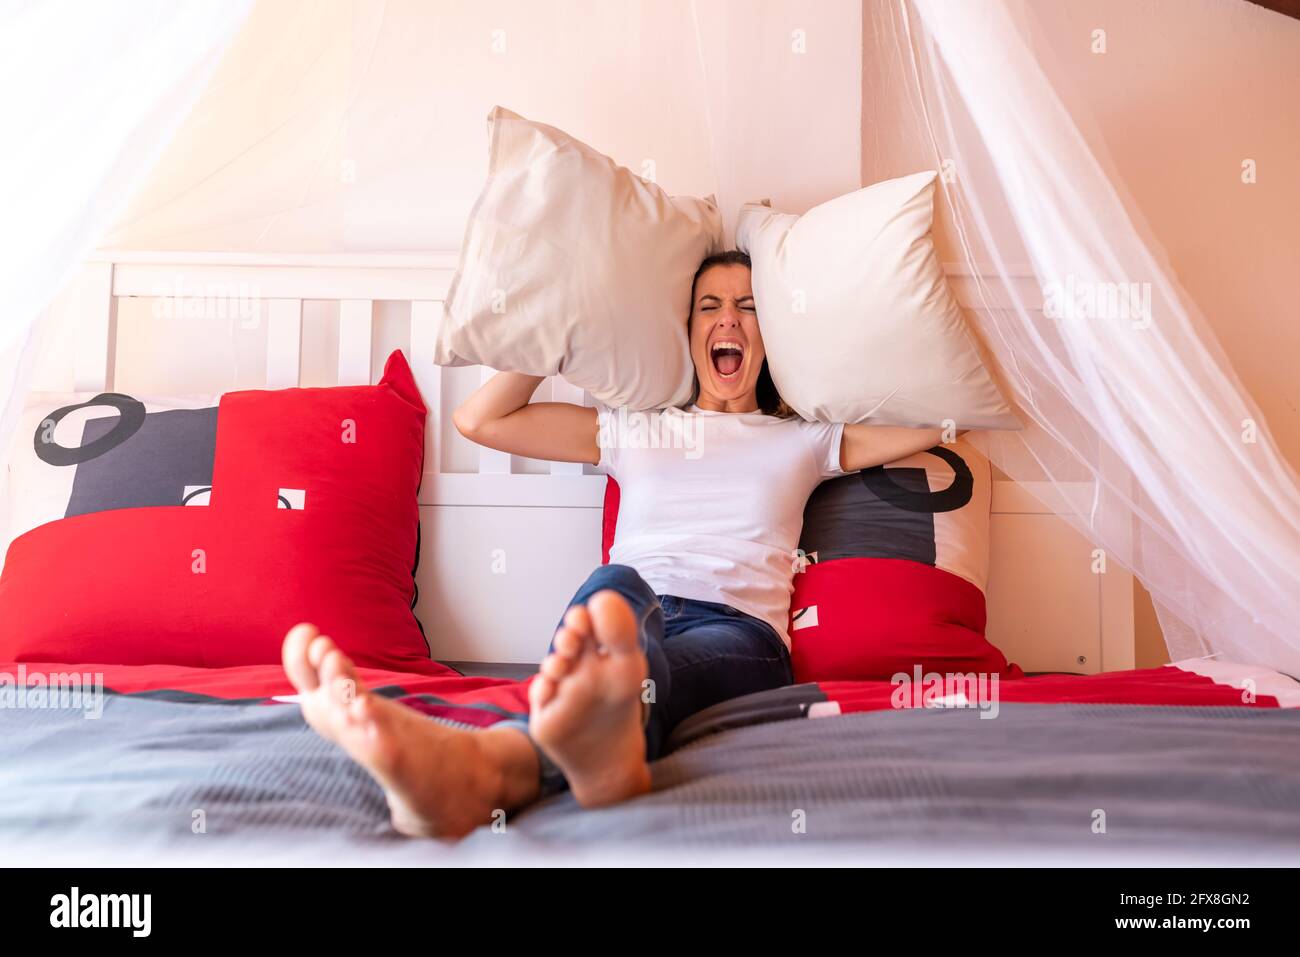 Eine Frau, die im Bett sitzt und Kissen wirft, während sie verrückt und  schreiend wird Stockfotografie - Alamy